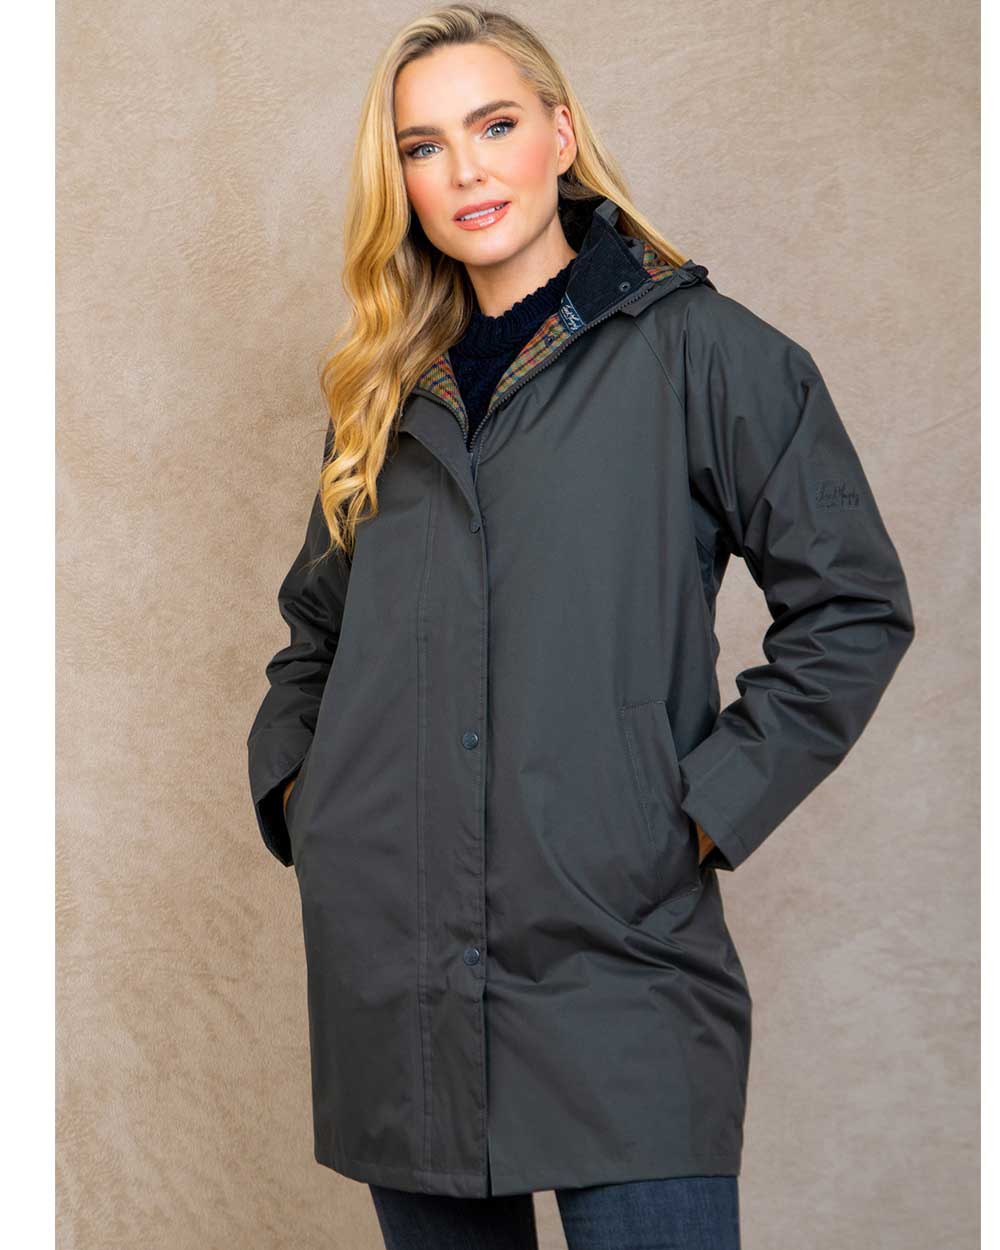 Womens Long Waterproof Coats - Full or 3/4 Length